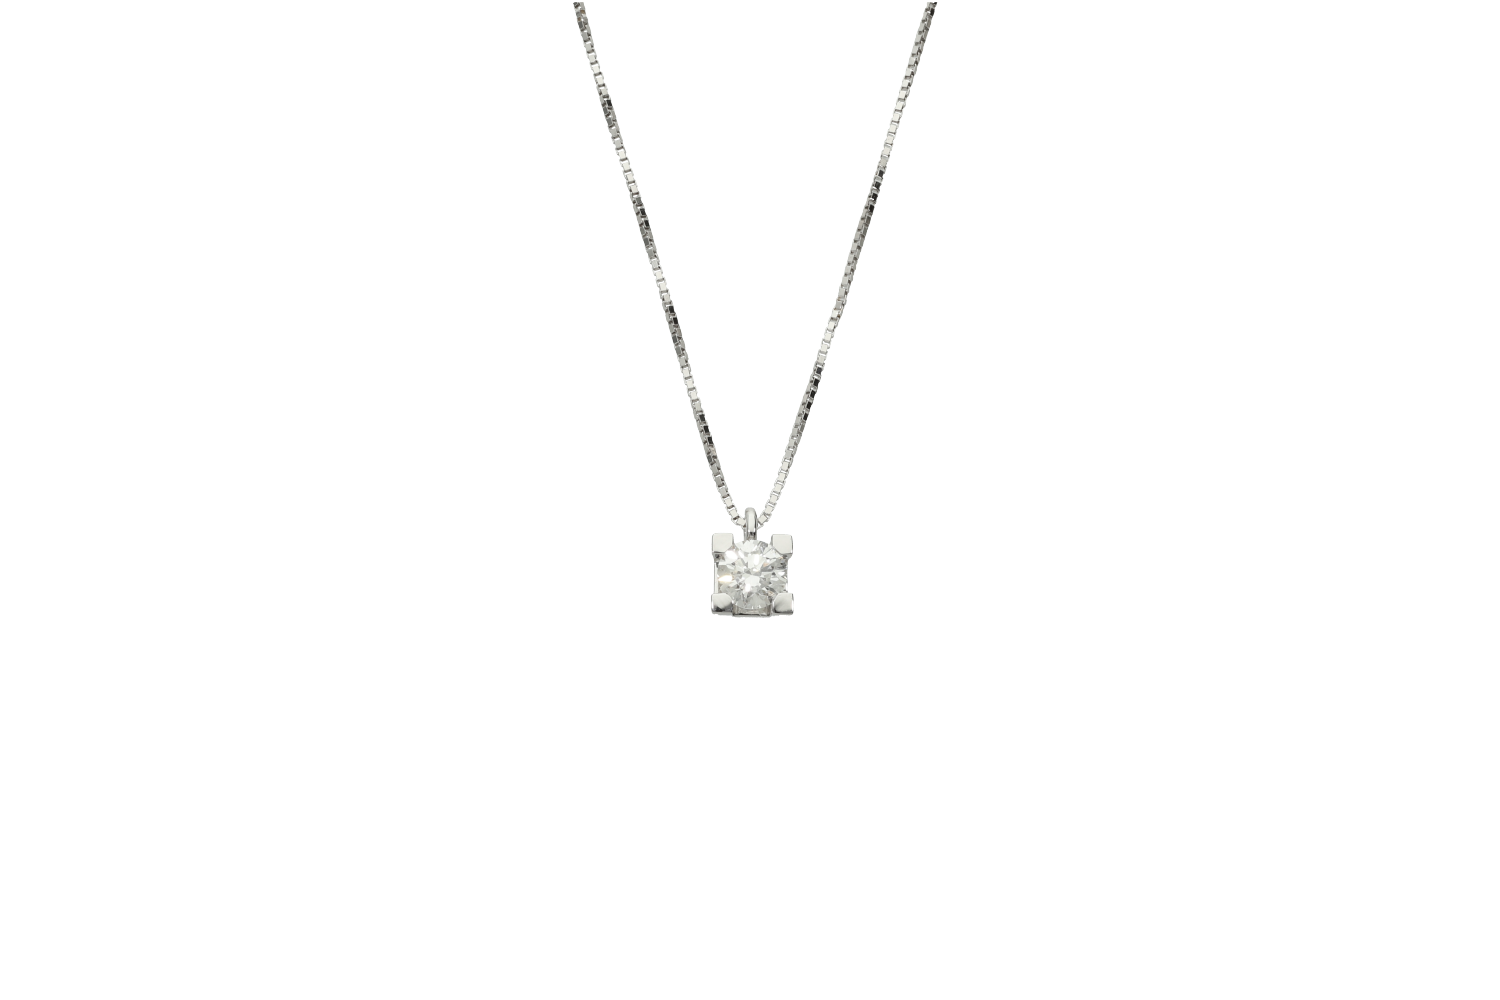 Κολιέ σε λευκόχρυσο 18Κ μονόπετρο τετράγωνο καστόνι με διαμάντι και αλυσίδα βενετσιάνα.